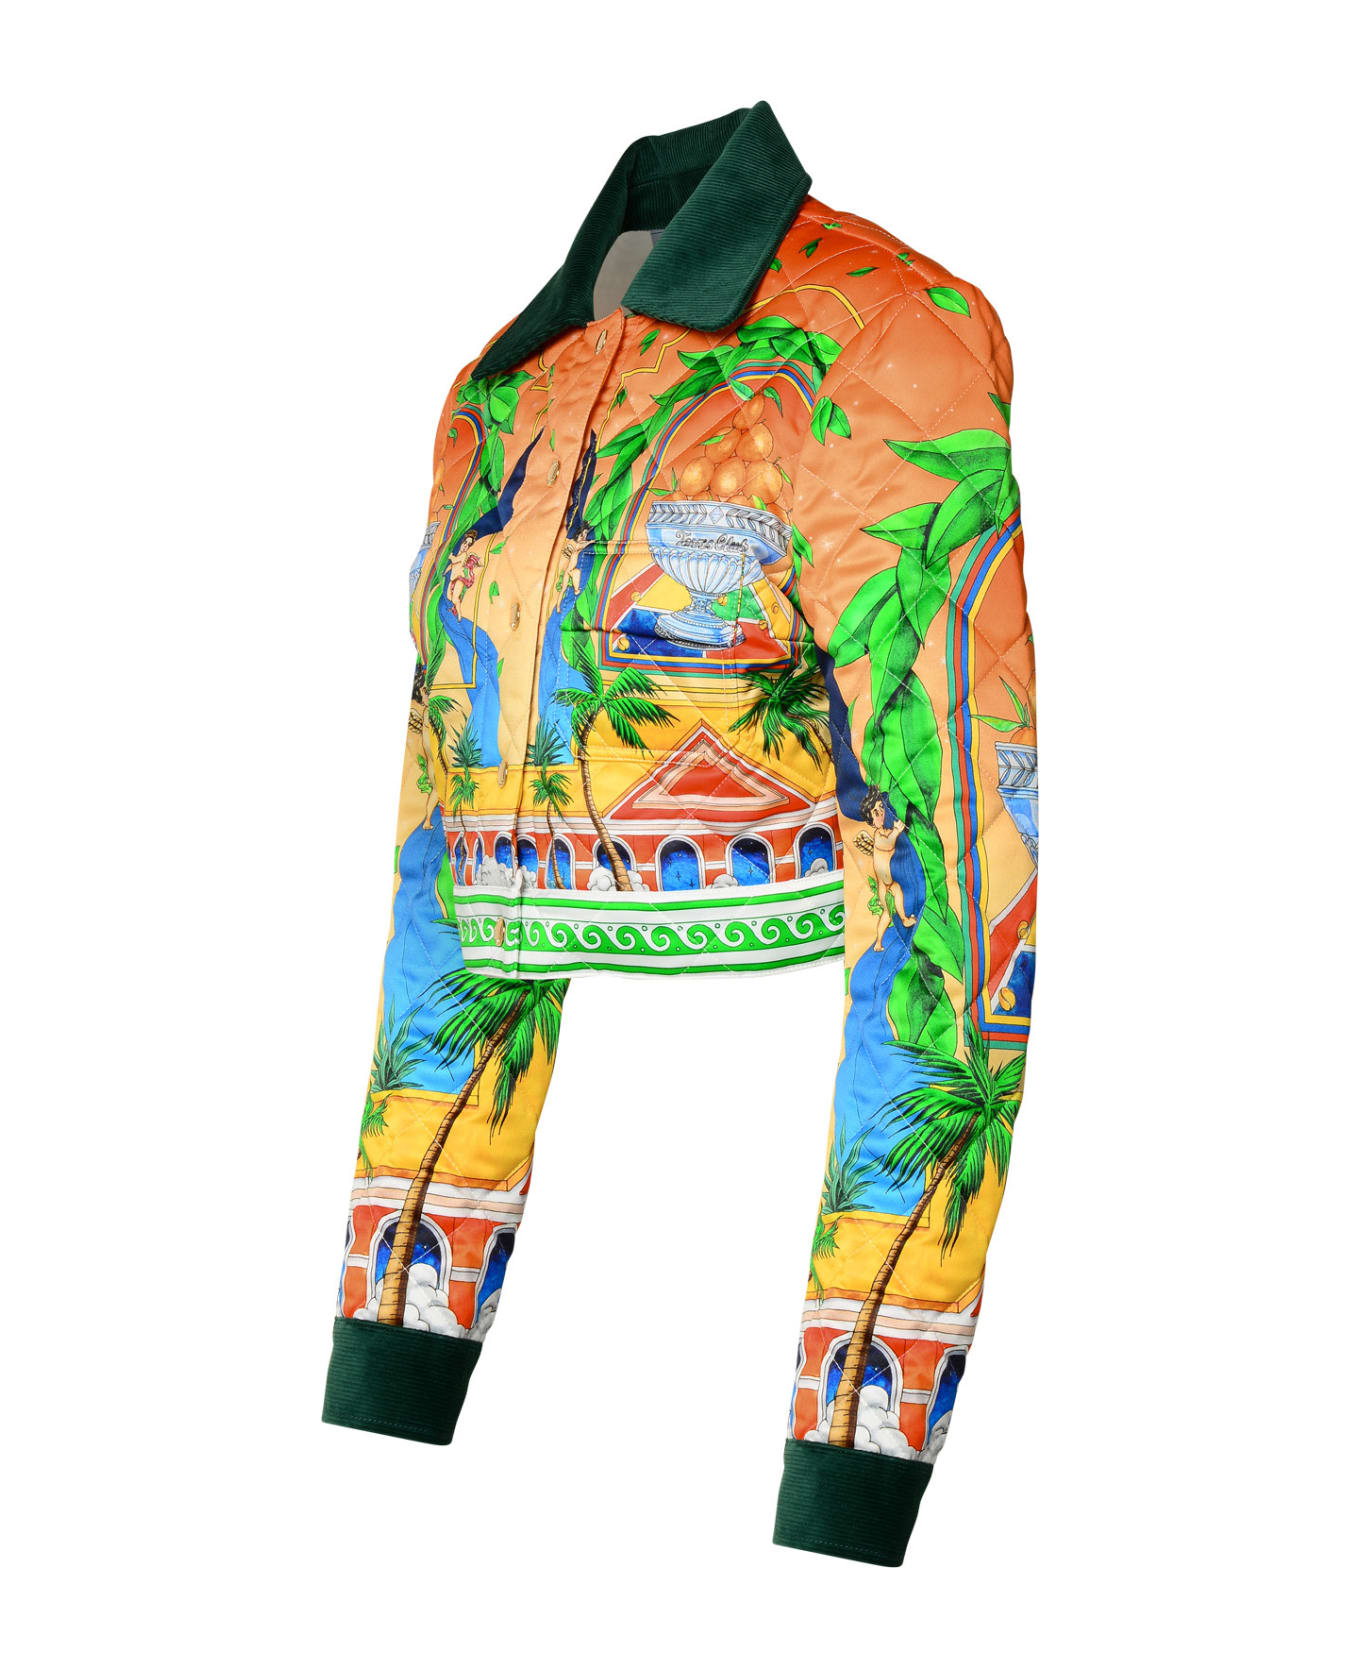 Casablanca Multicolor Polyester Jacket - ORANGE/GREEN ジャケット